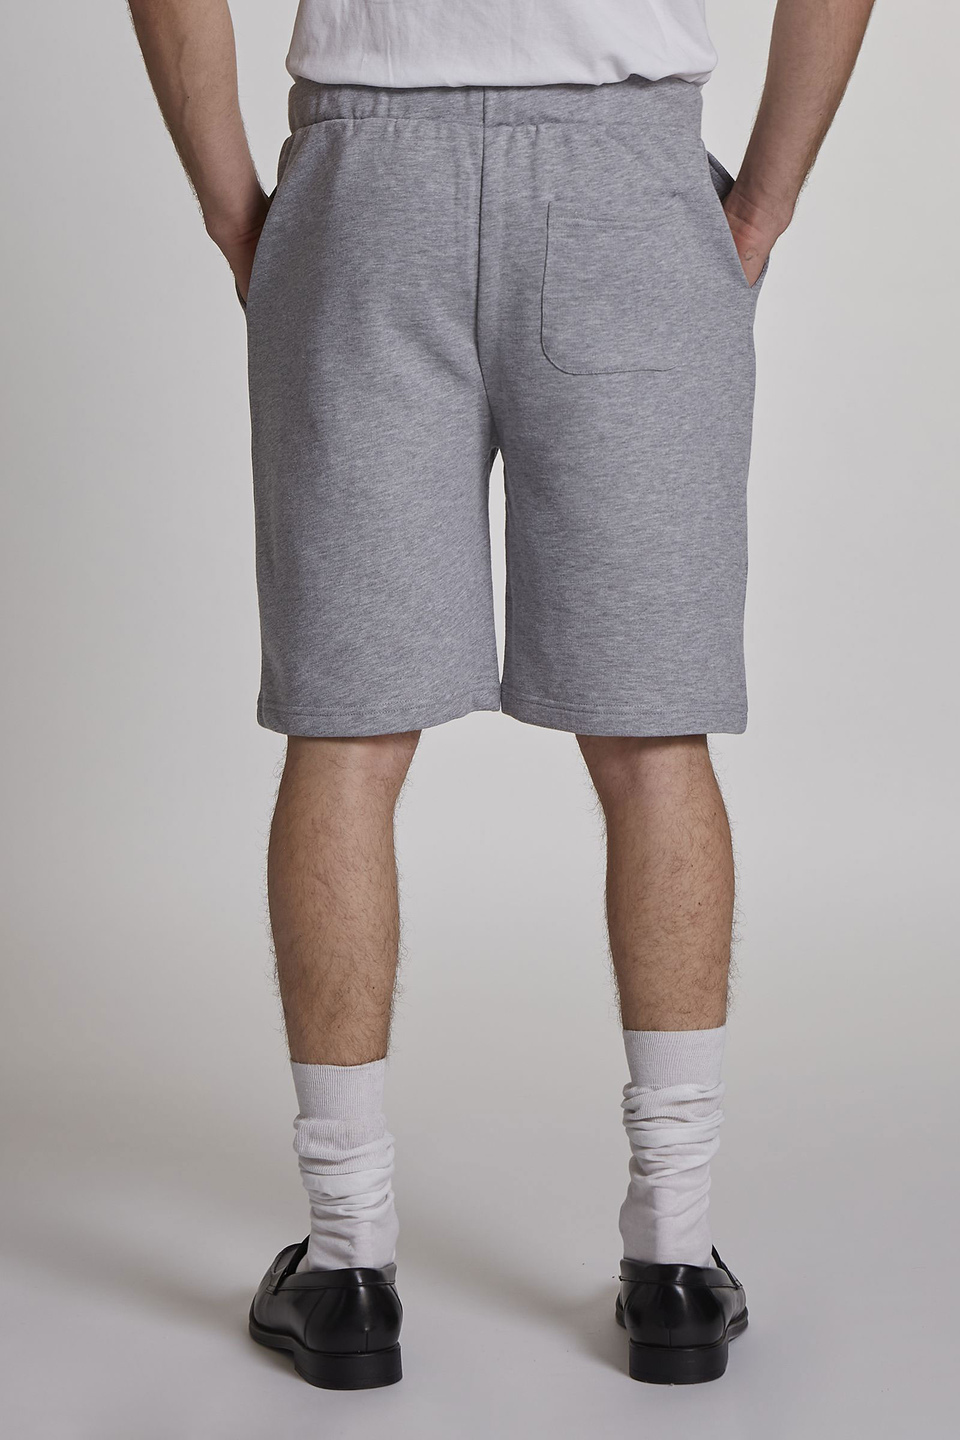 Regular-fit 100% cotton Bermuda shorts | La Martina - Official Online Shop